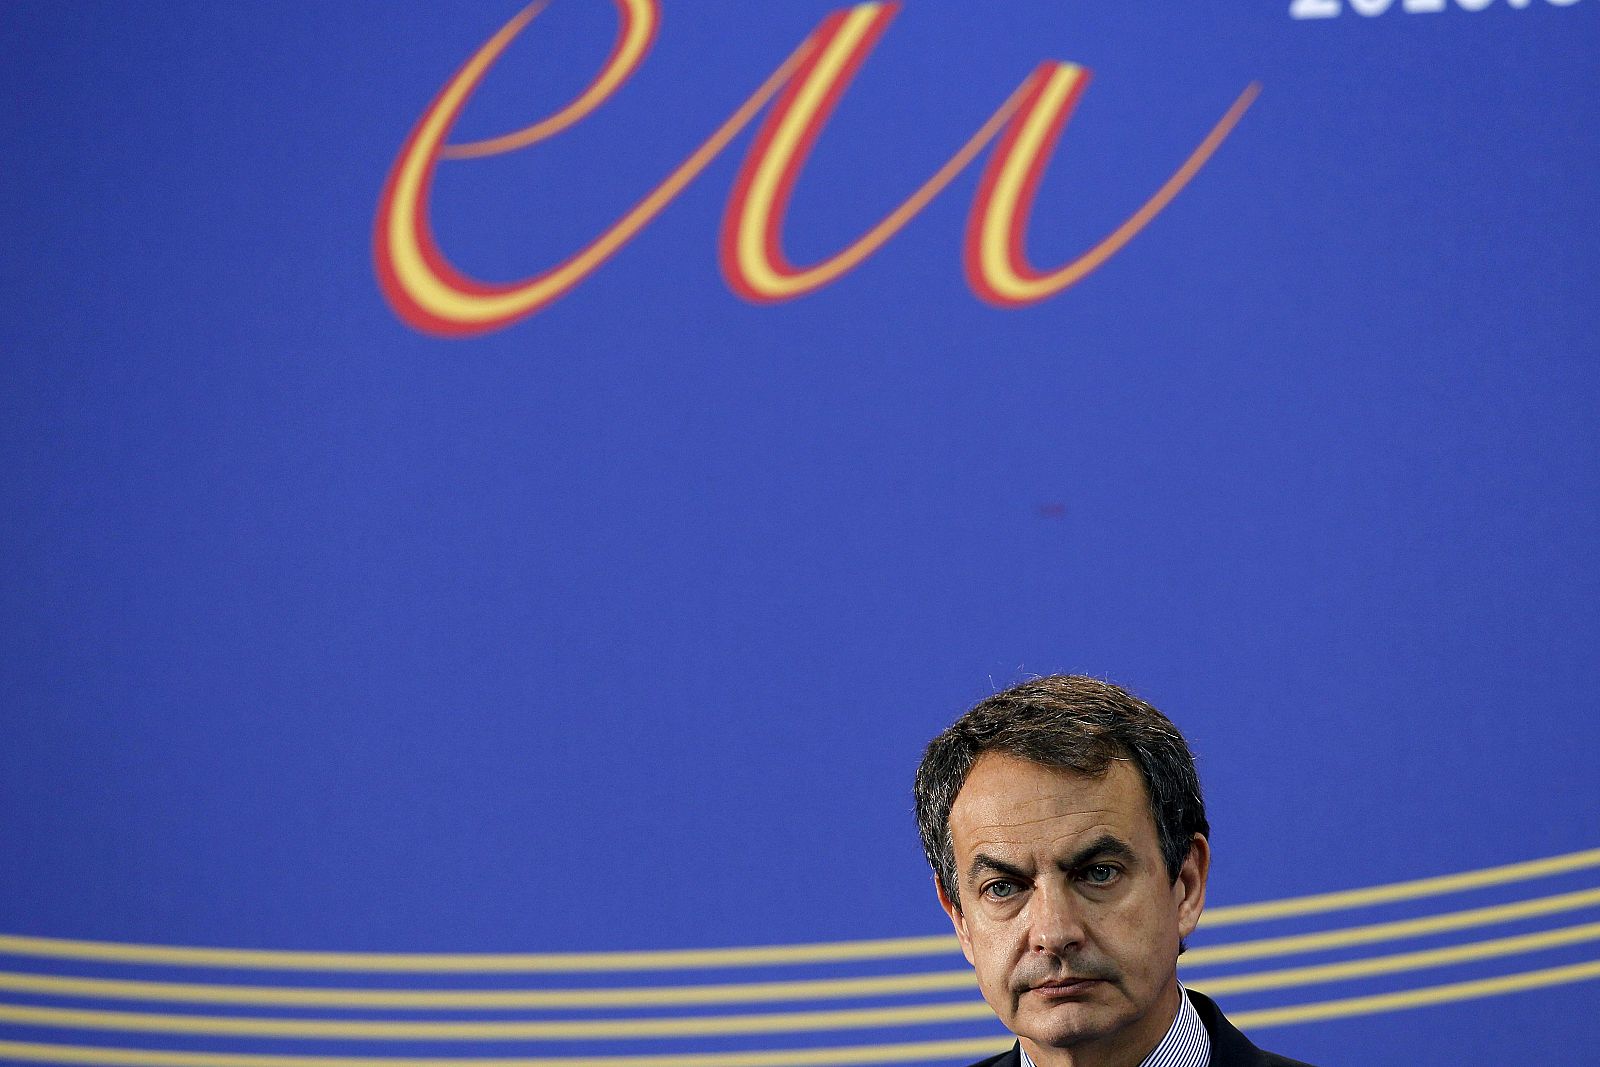 El presidente español, José Luis Rodríguez Zapatero, había dejado la puerta abierta a subir los impuestos "a los que realmente tienen"